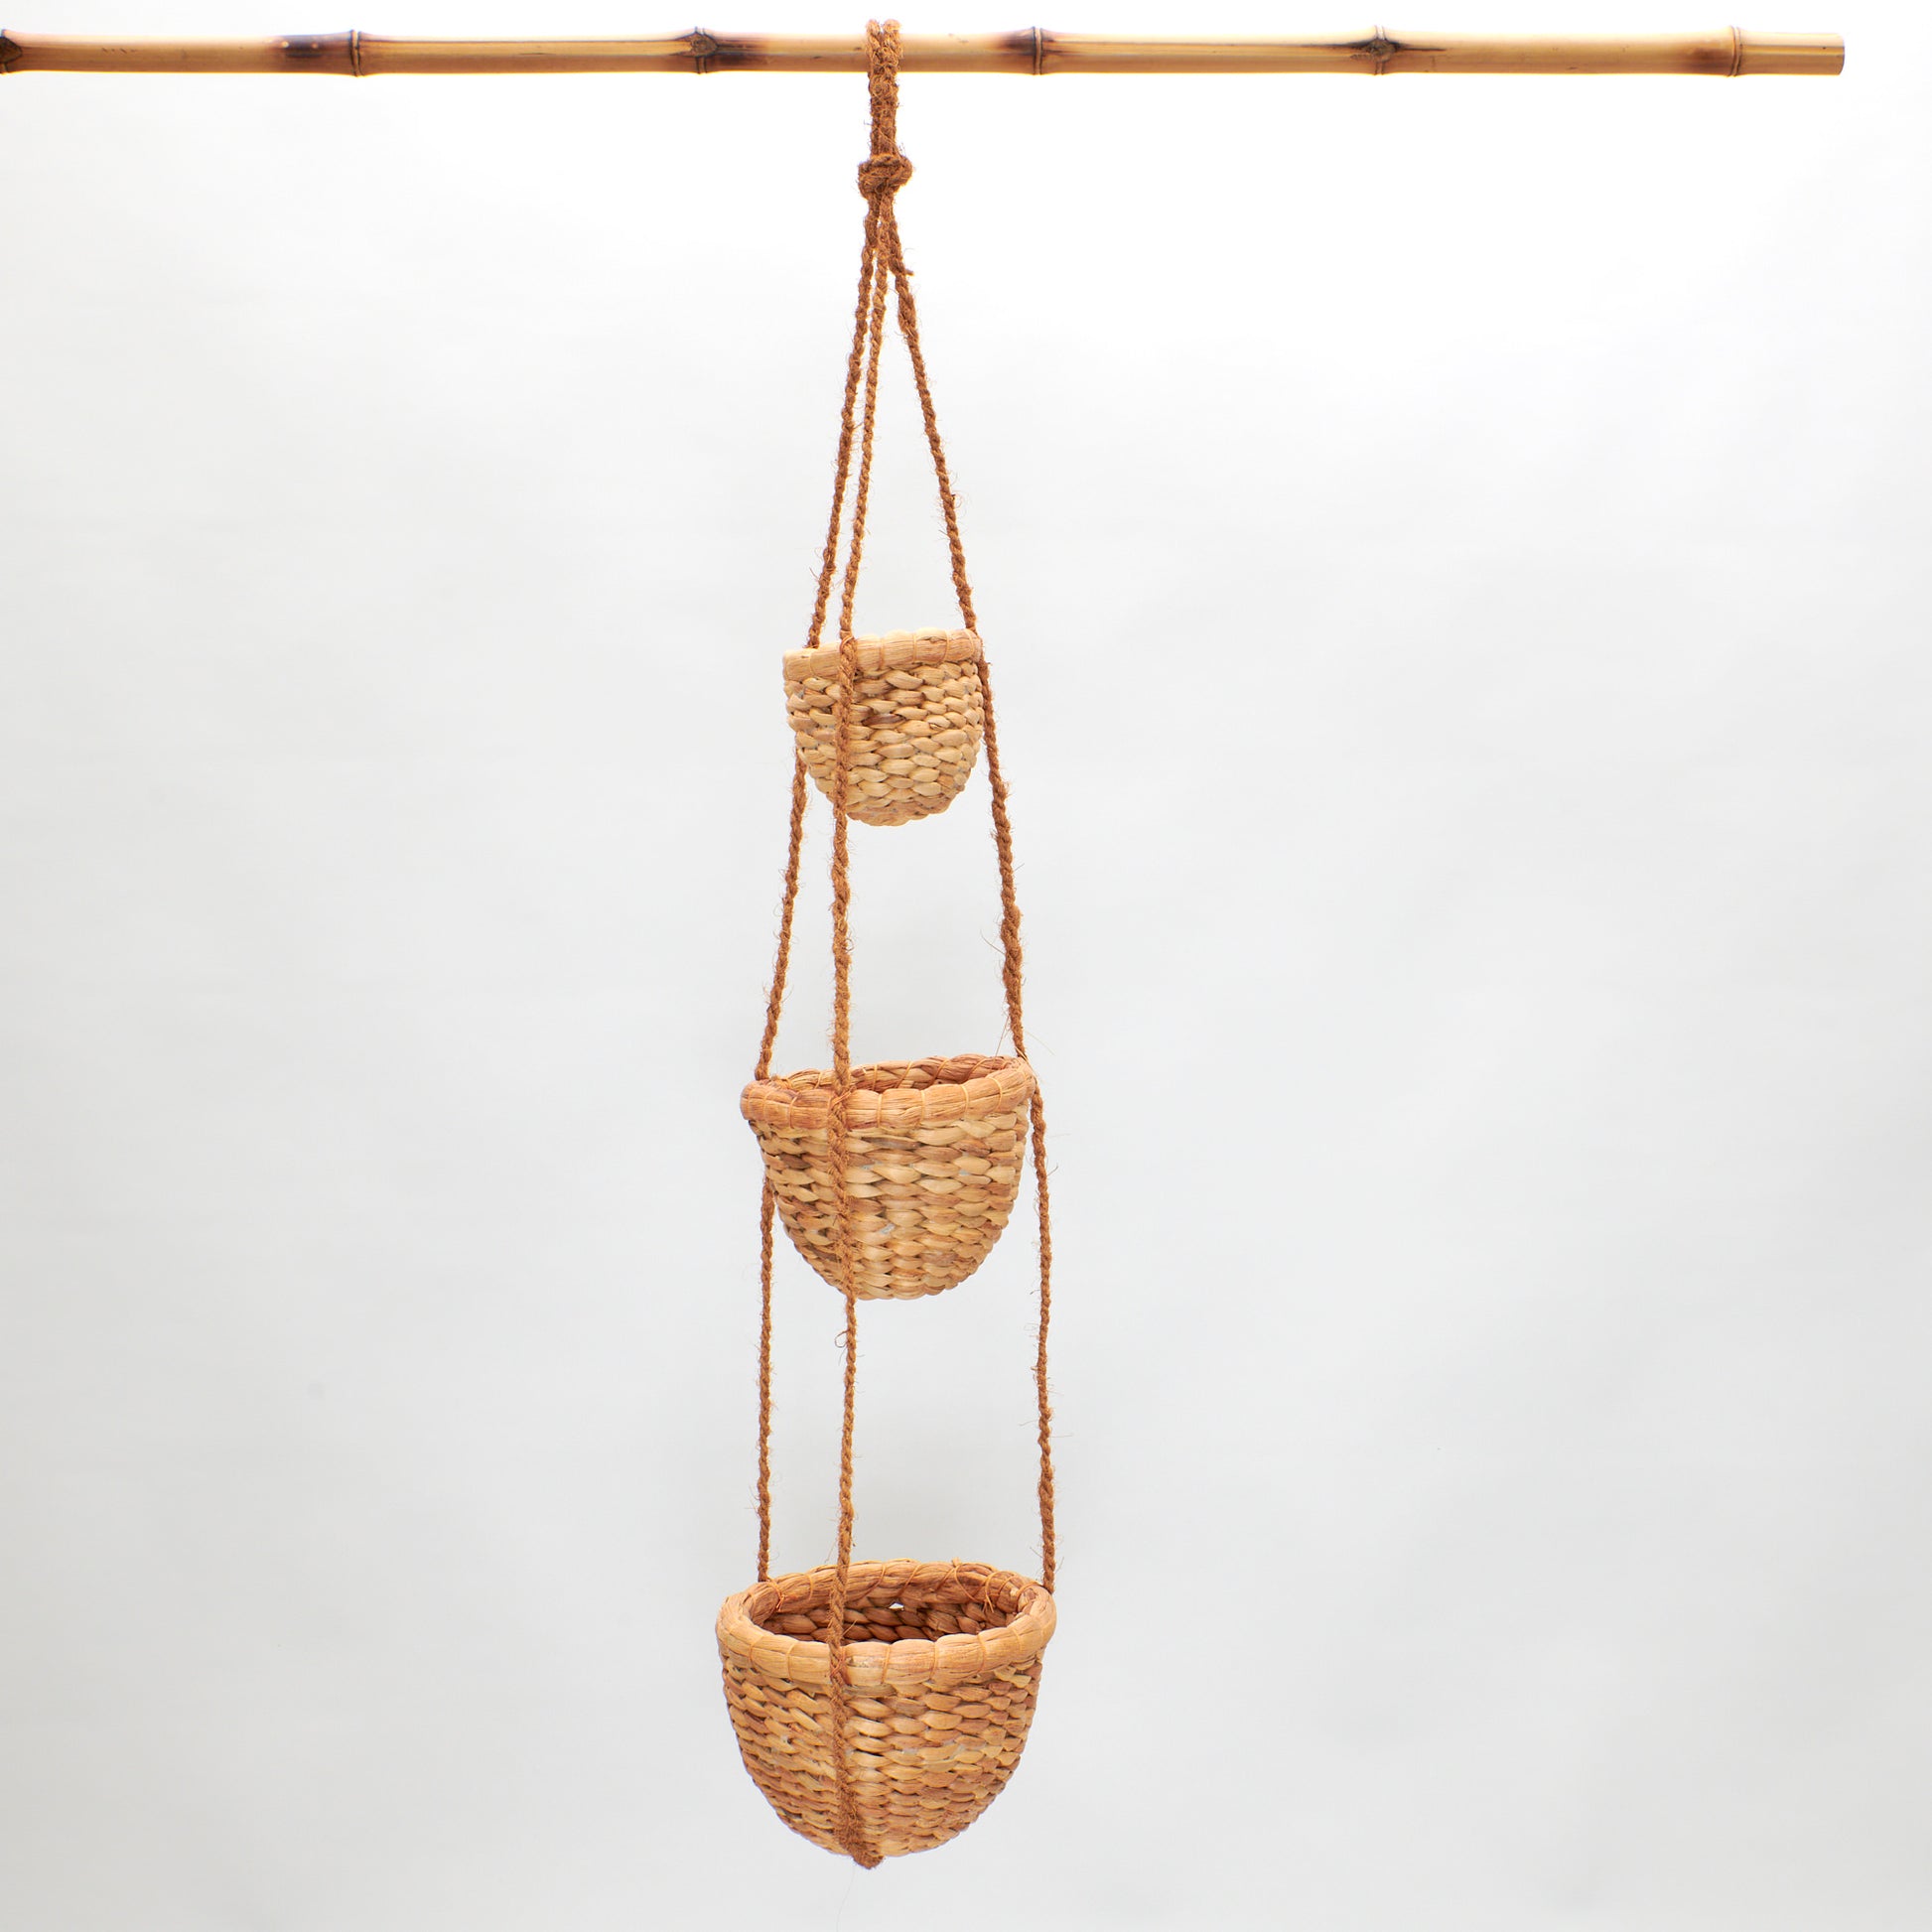 Blumenampel aus drei größer werdenden Töpfen, die mit Kokosfaserseil aufgehängt werden